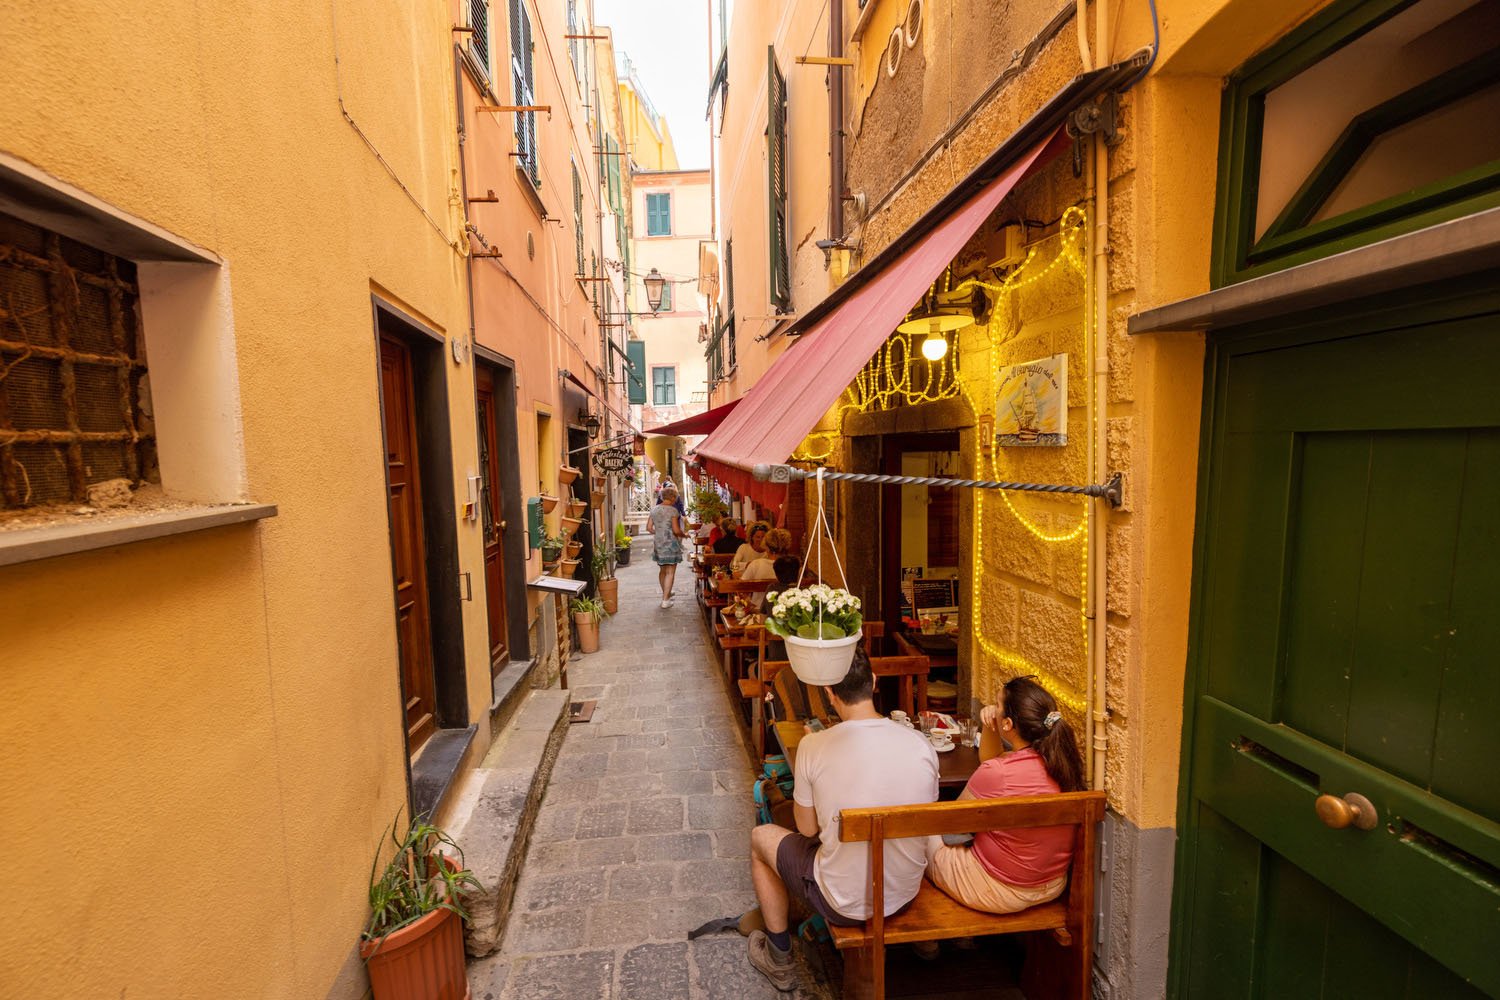 Restaurants lining narrow side streets